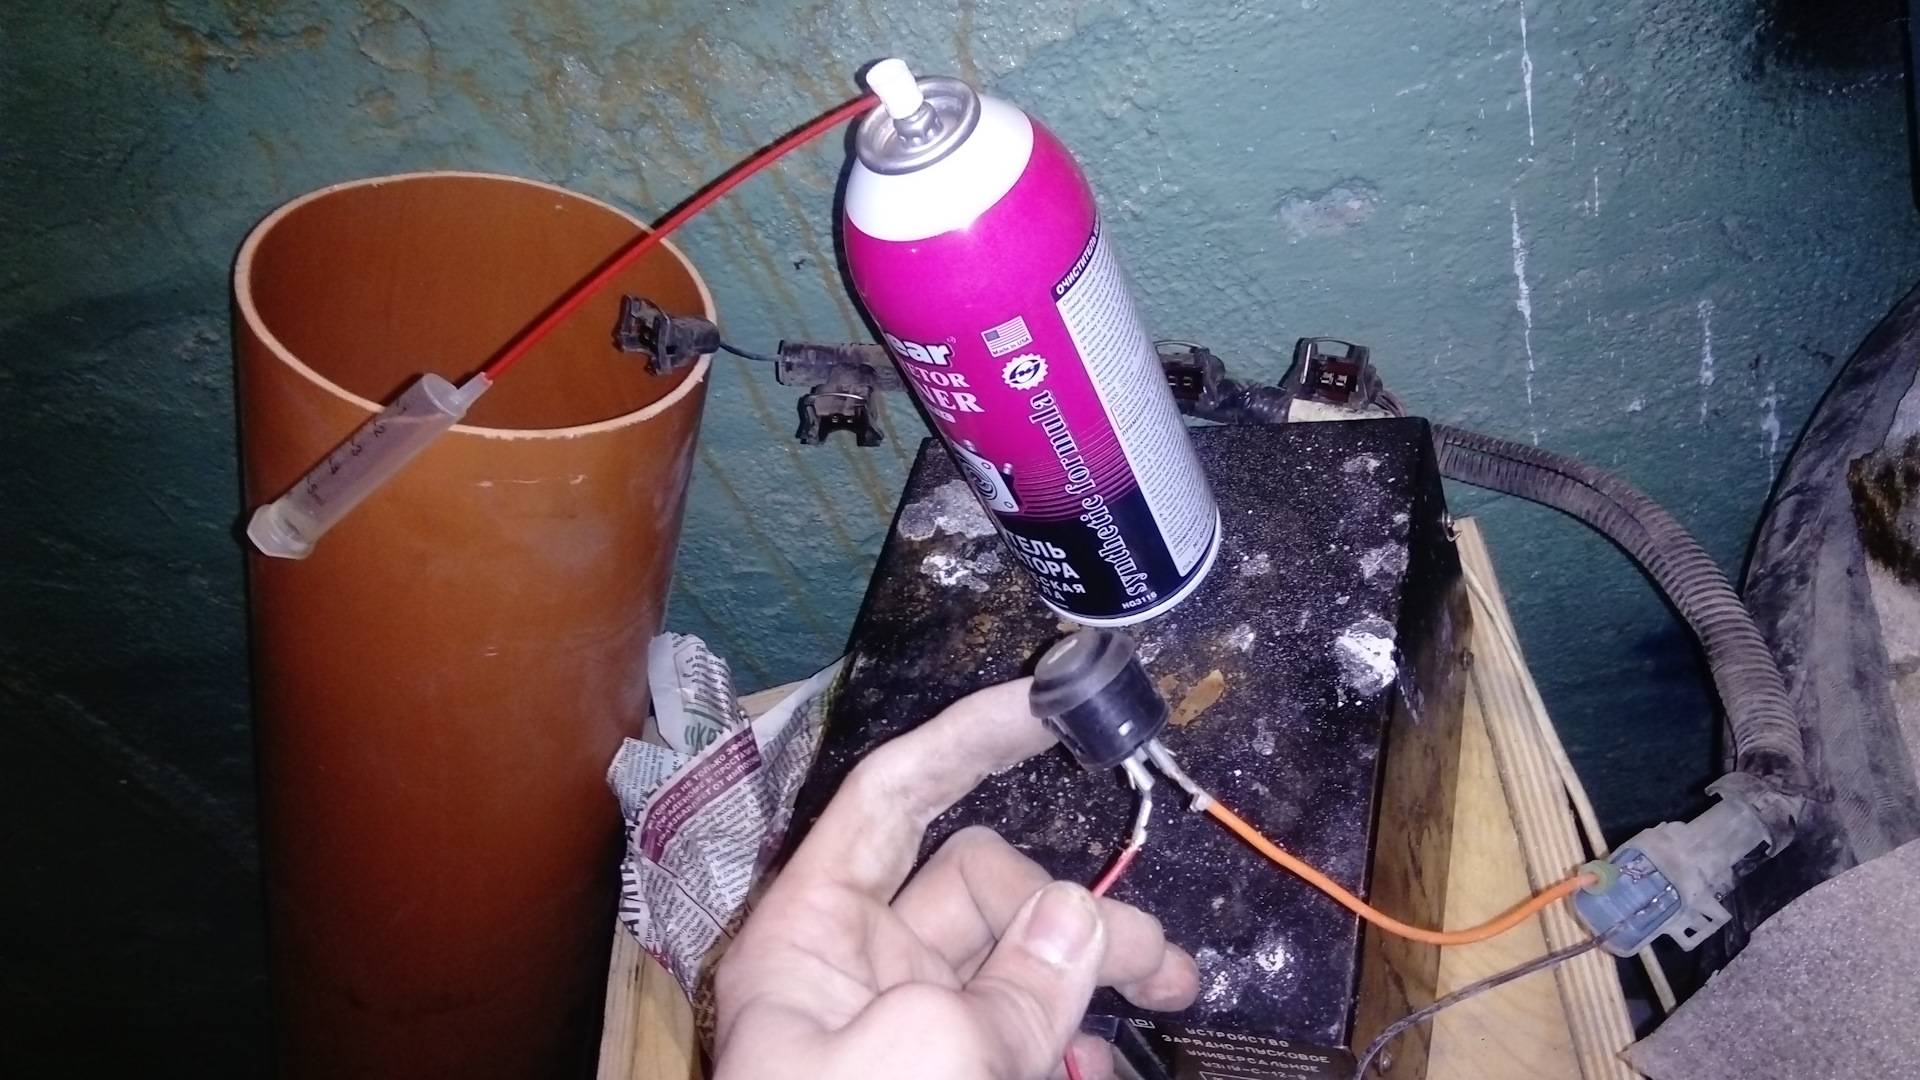 Промывка инжектора и форсунок без снятия с двигателя